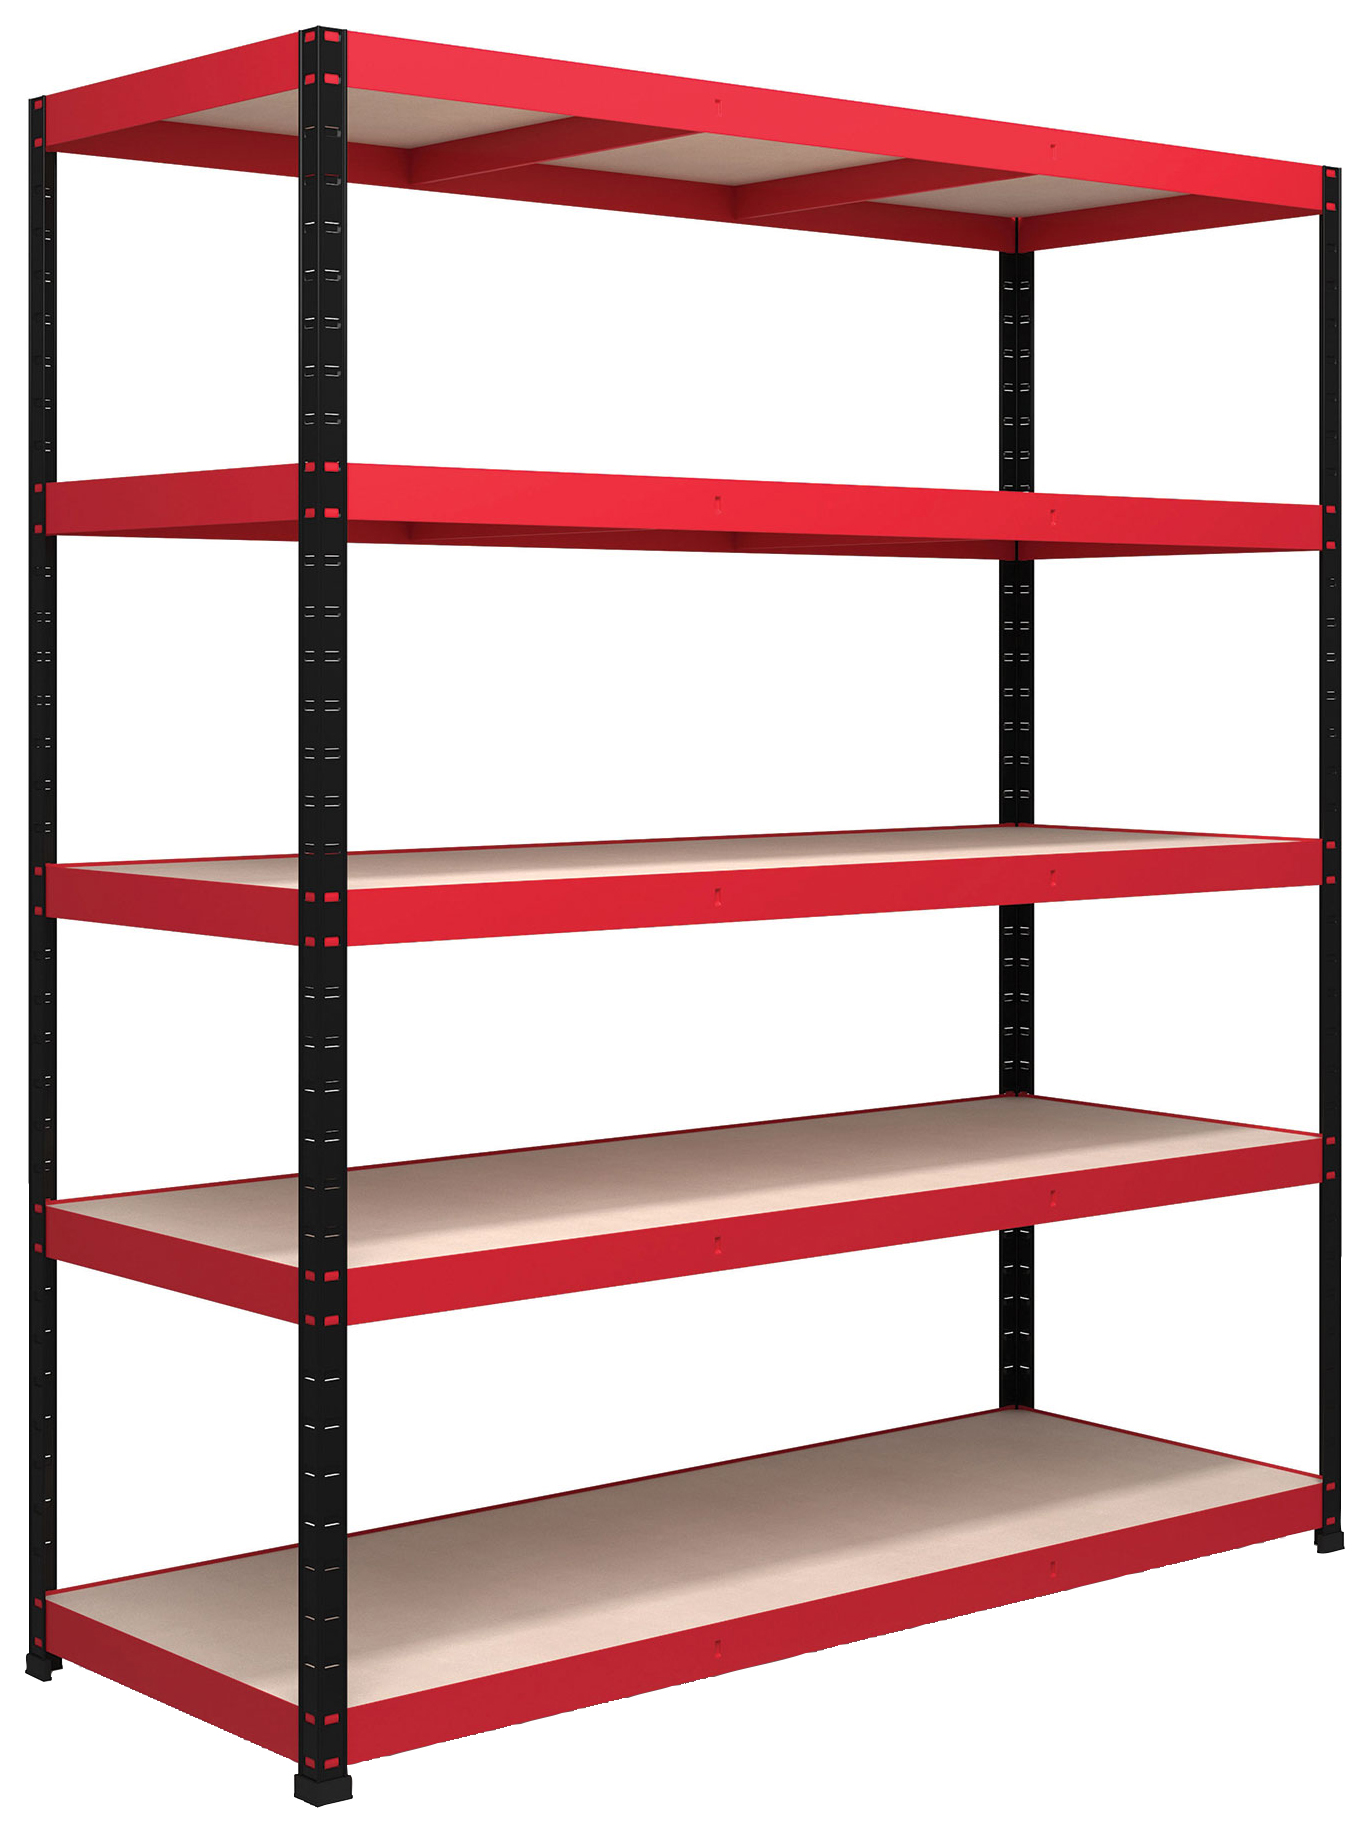 Image of Rb Boss Shelf Kit 5 Wood Shelves - 1800 x 1600 x 600mm 250kg Udl